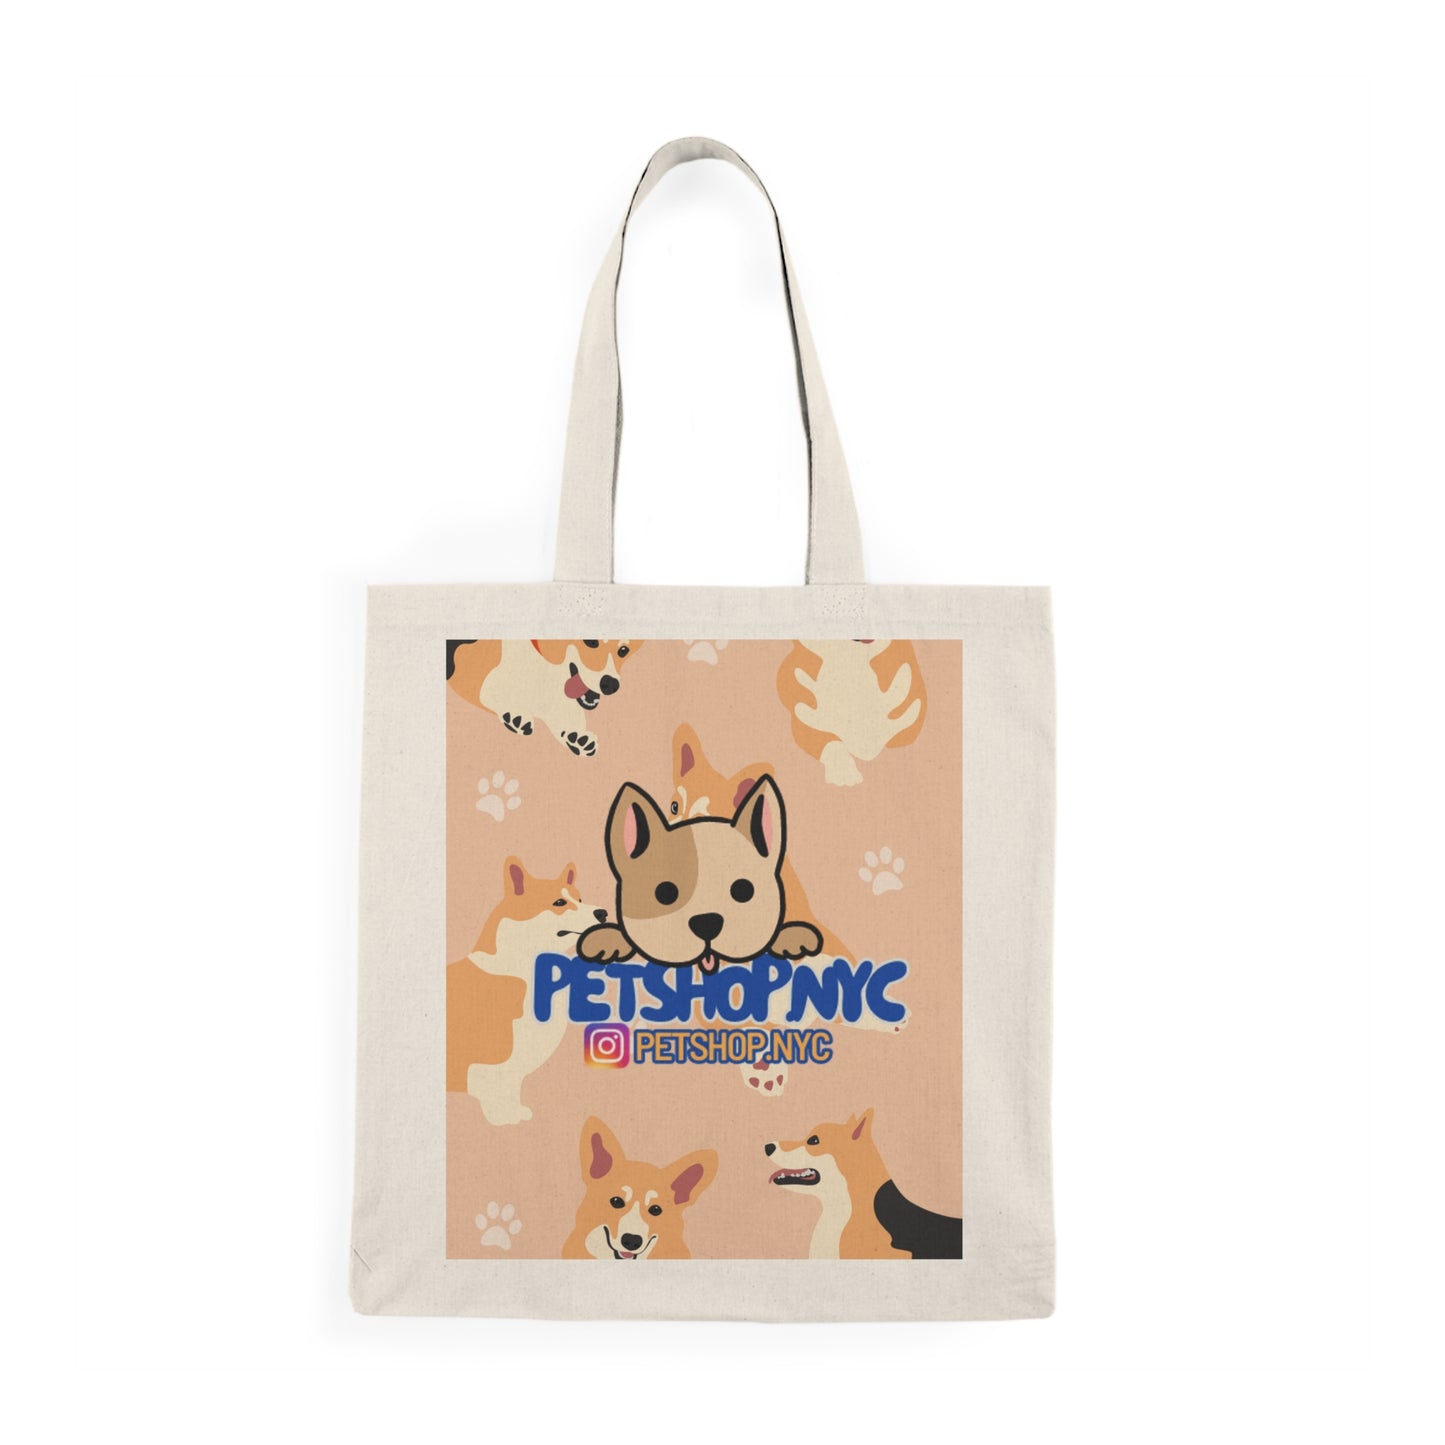 PetShop Tote Bag